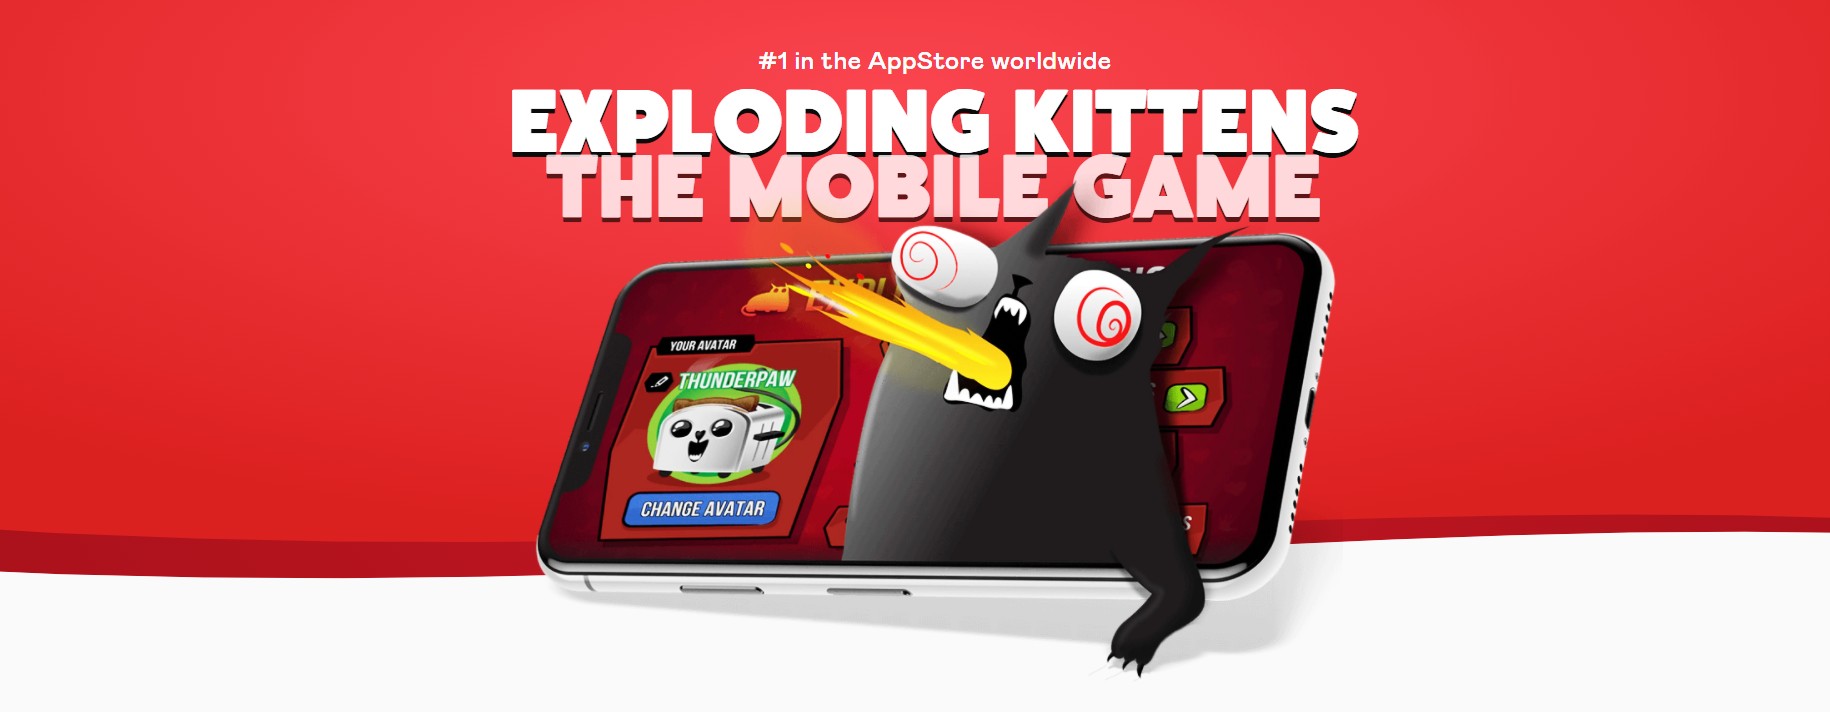 <img src="exploding.jpg" alt="exploding kittens mobile game"/> 